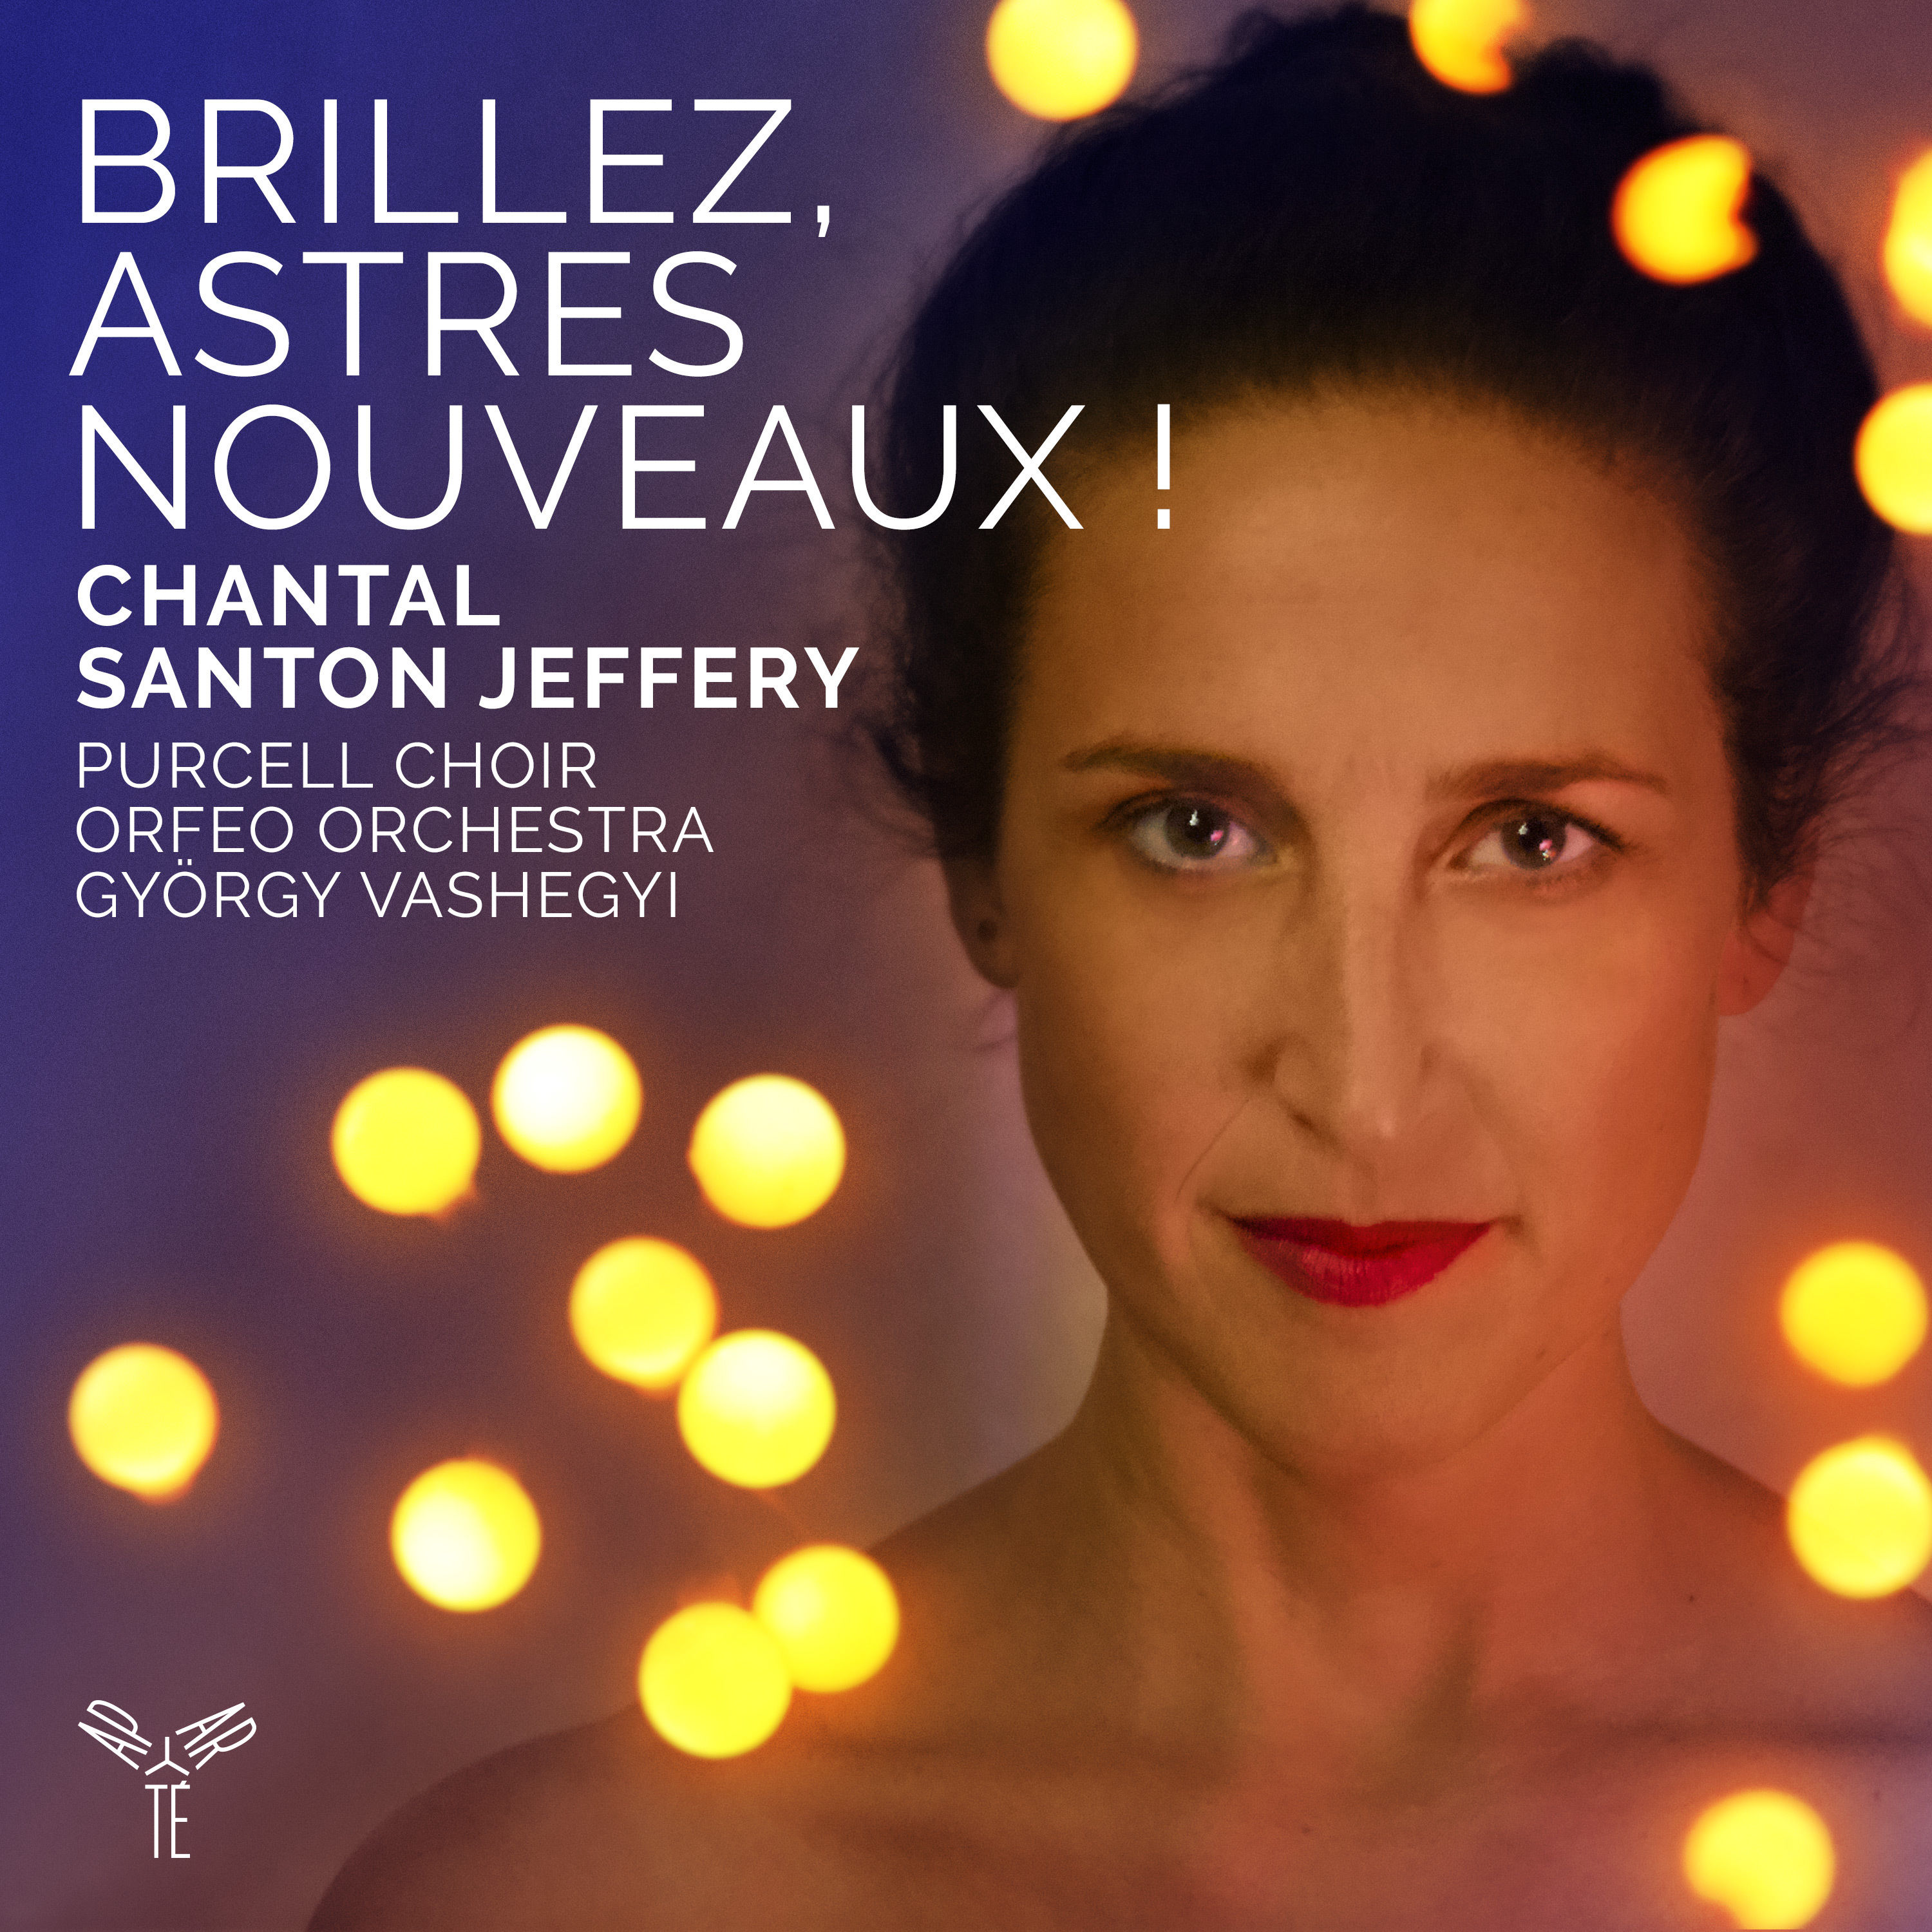 Chantal Santon Jeffery – Brillez, astres nouveaux ! (Airs d’opera baroque francais) (2020) [FLAC 24bit/96kHz]